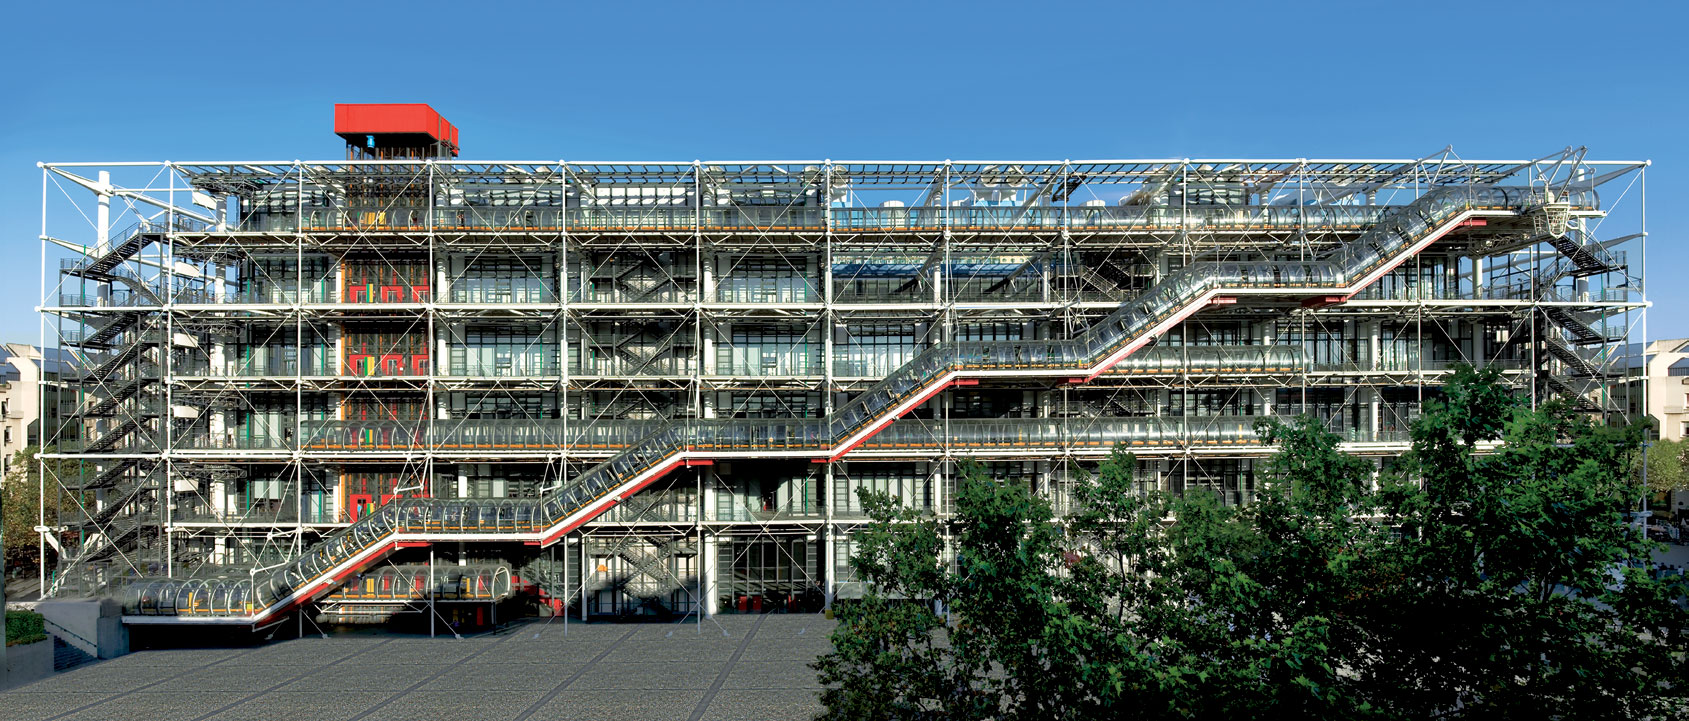 Το Κέντρο Πομπιντού στο Παρίσι θα κλείσει για ανακαίνιση το 2025 και θα ανοίξει ξανά το 2030